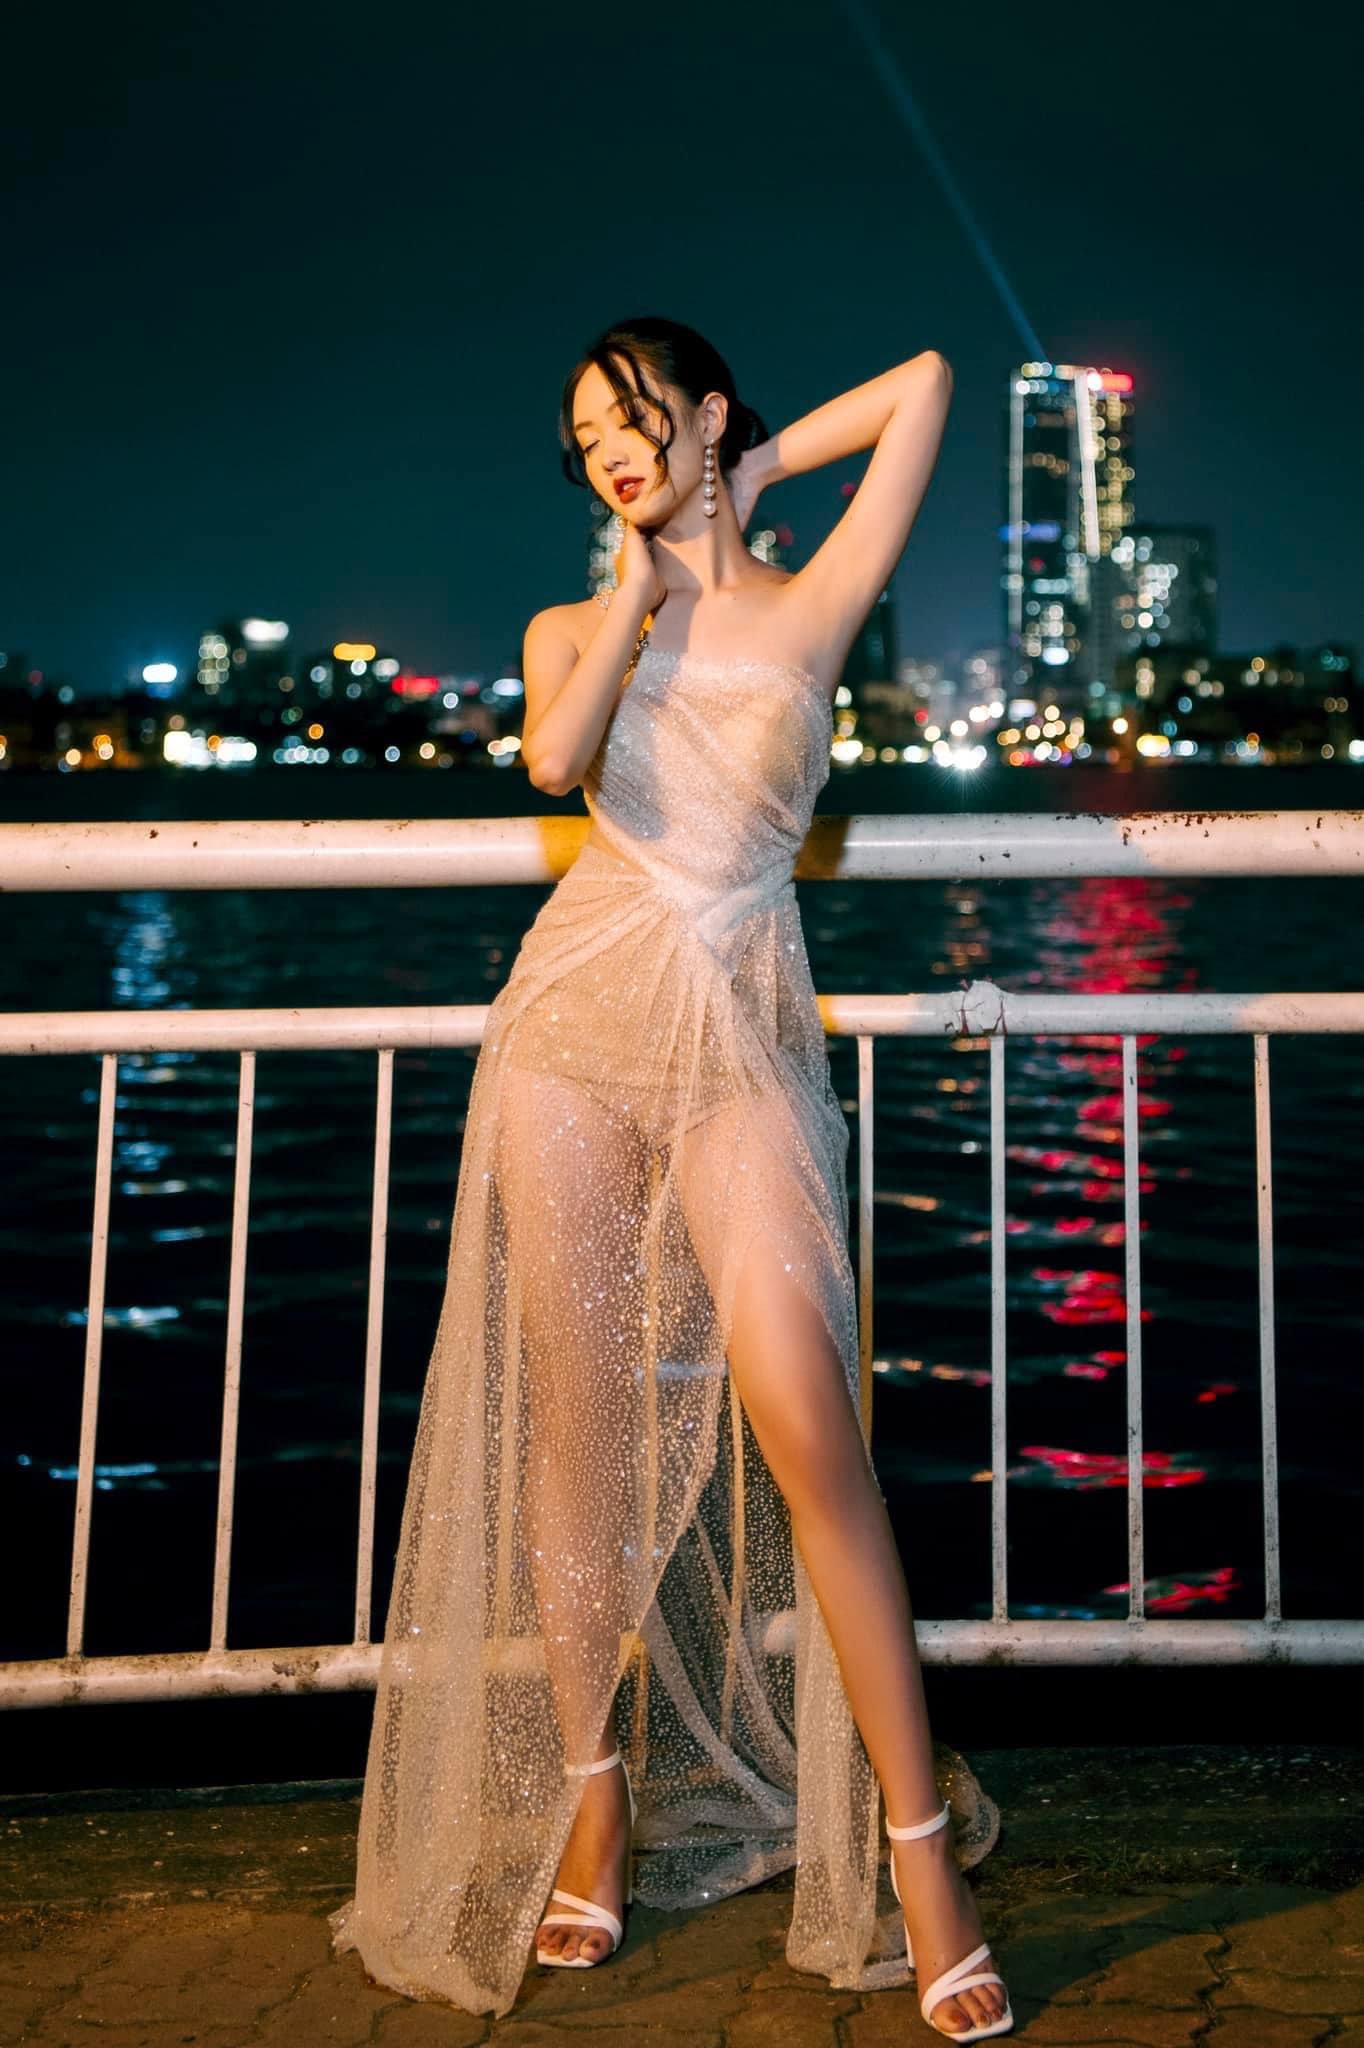 Nhan sắc người đẹp phố núi Vũ Như Quỳnh - Thí sinh được yêu thích nhất Miss World Vietnam 2022 - Ảnh 12